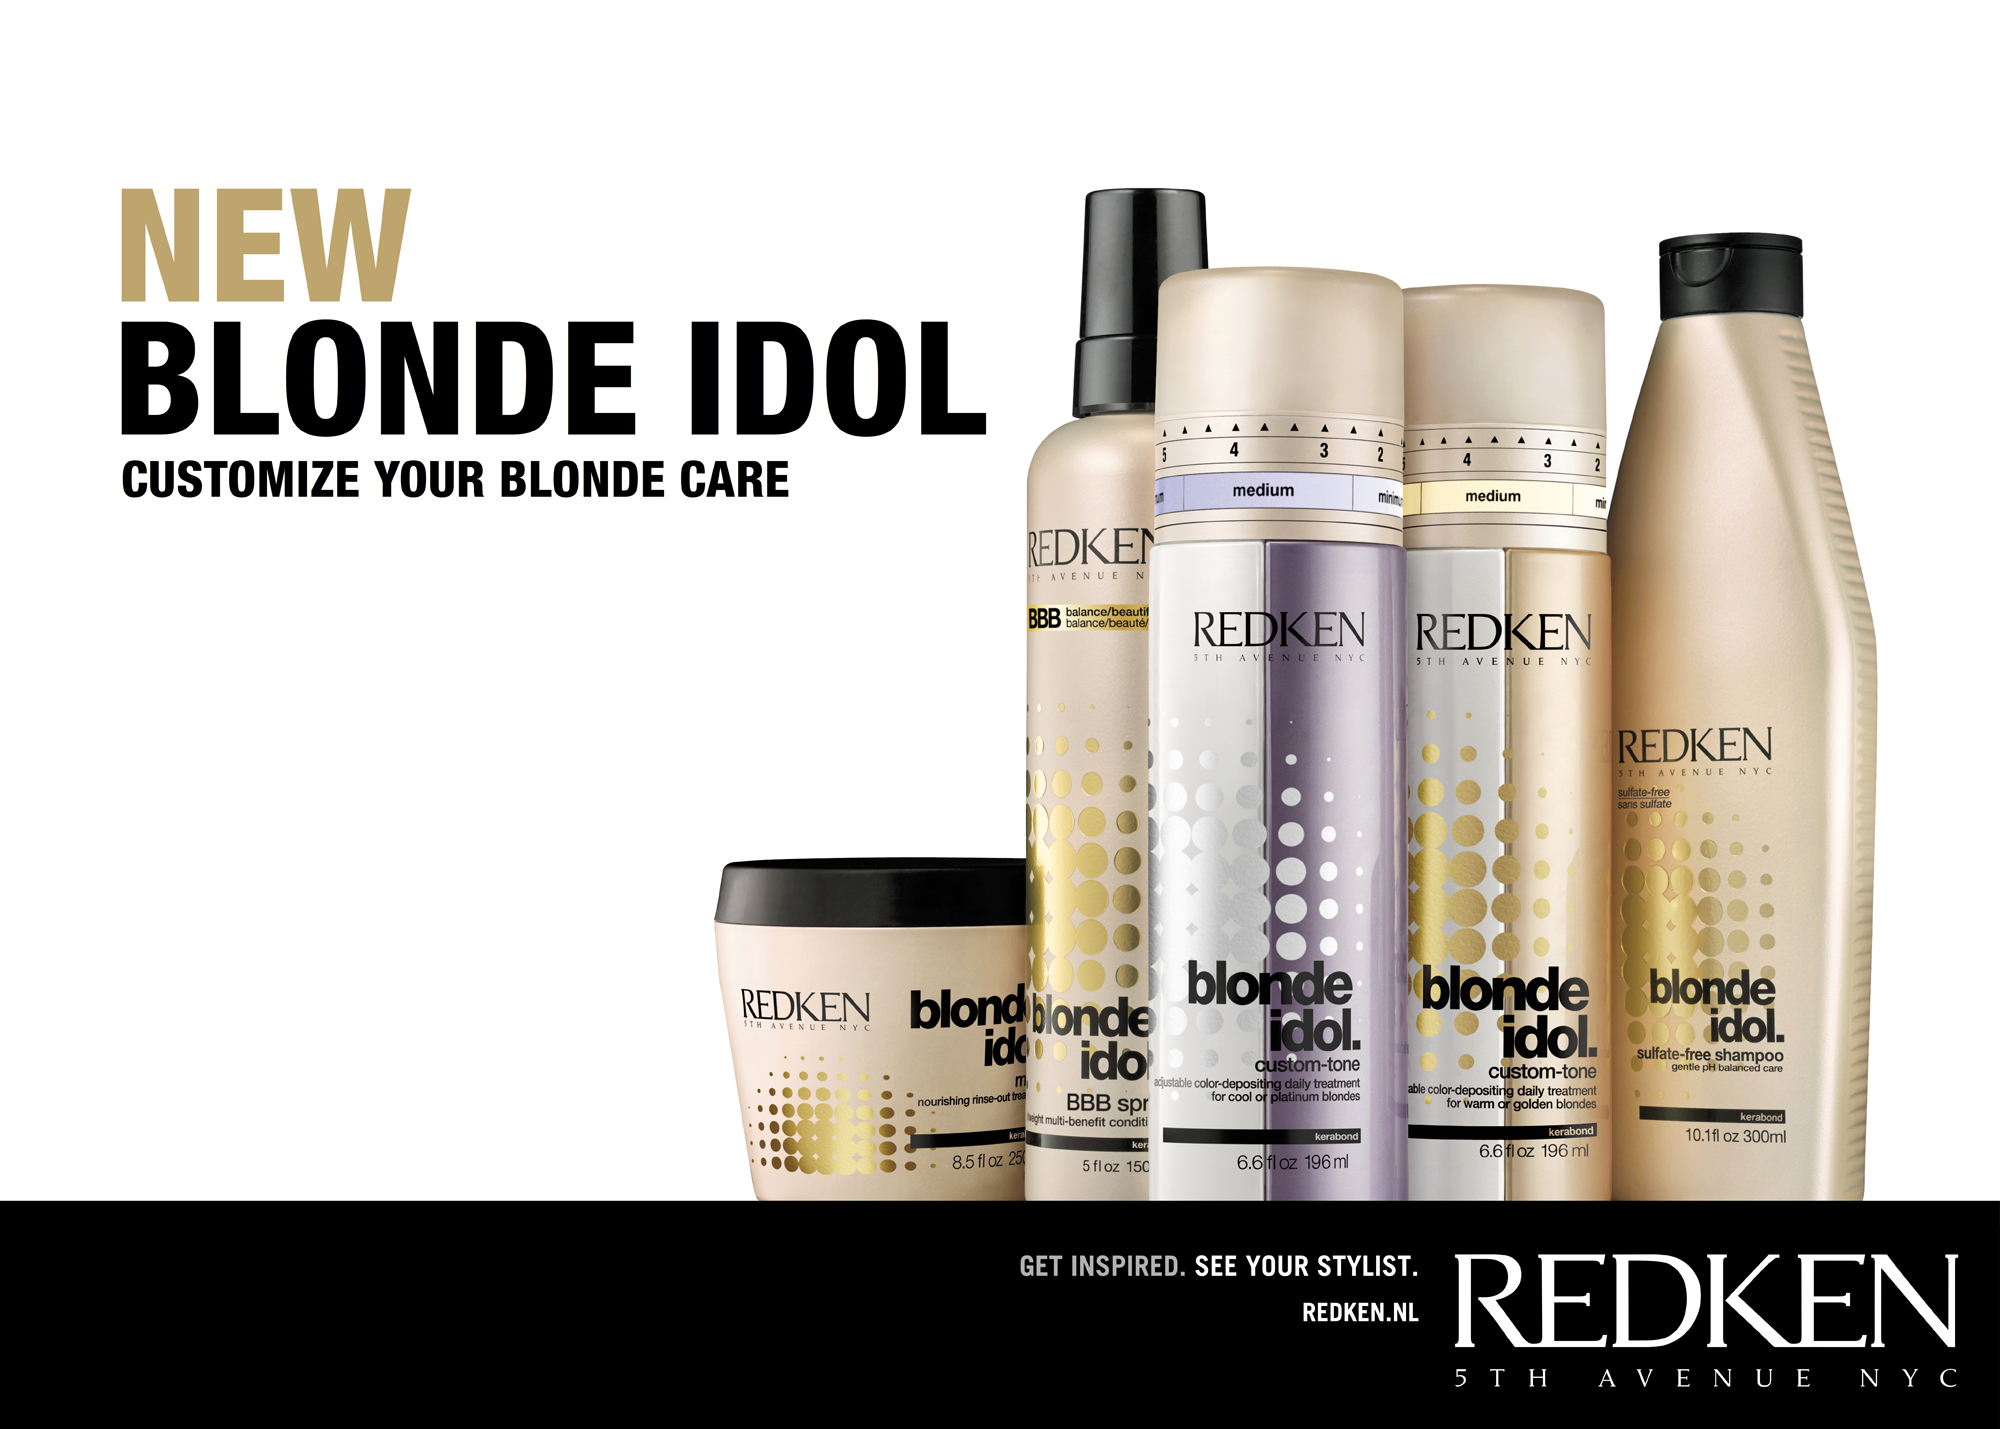 Blond Idol Hair Bleach by Redken - wide 9